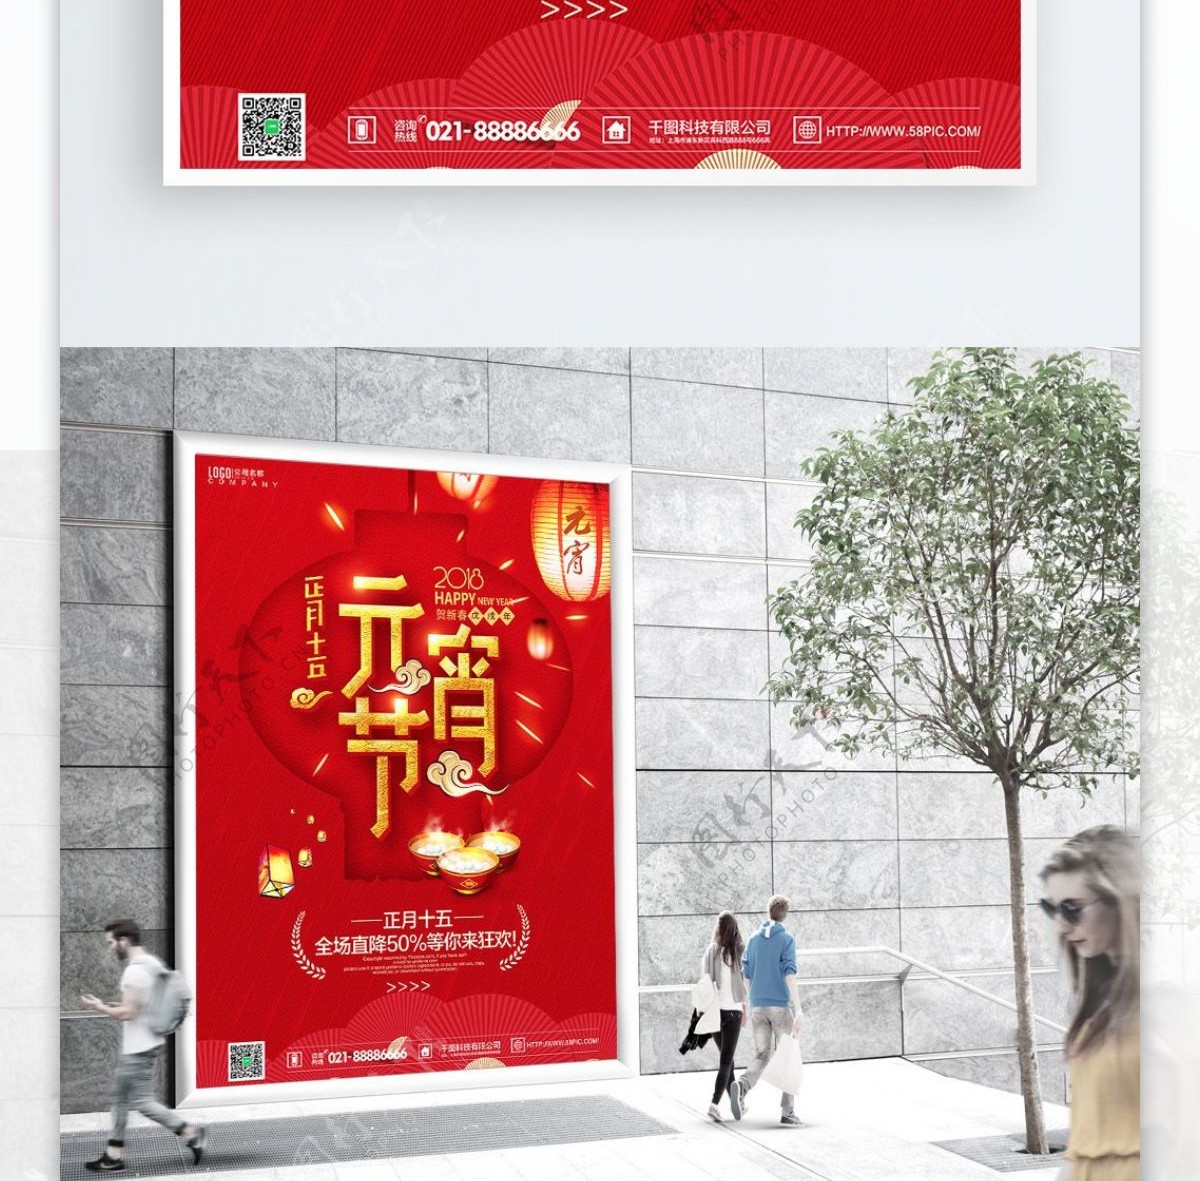 元宵节节日红色大气活动促销海报